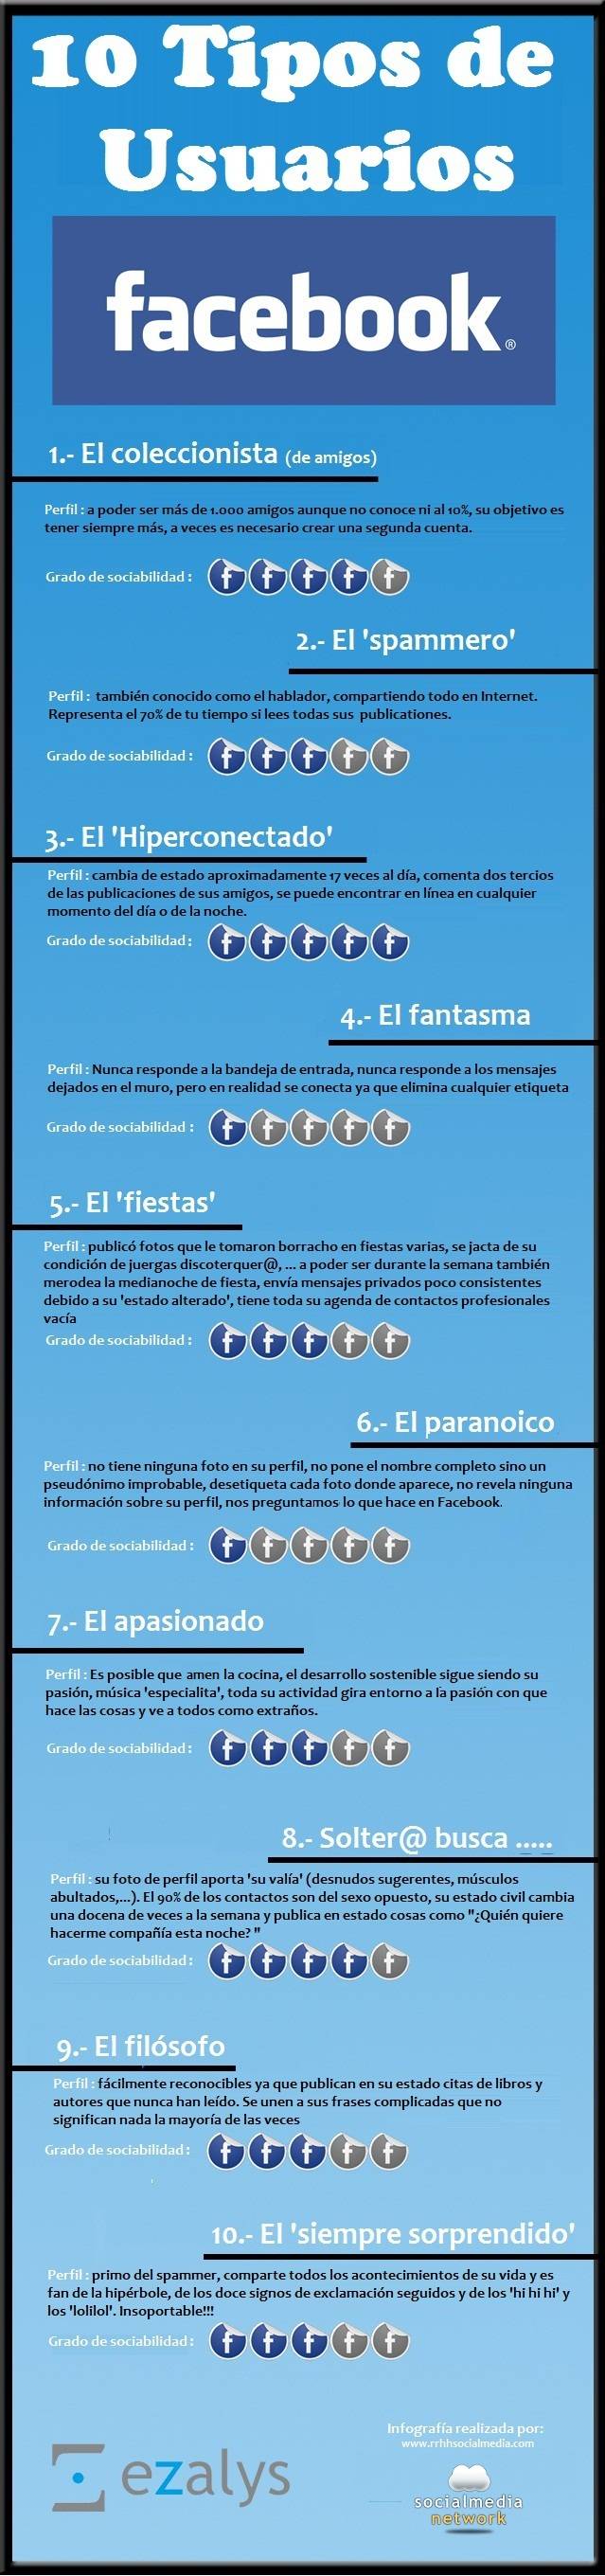 10 tipos de usuario de Facebook #Humor #Infografía en español 1